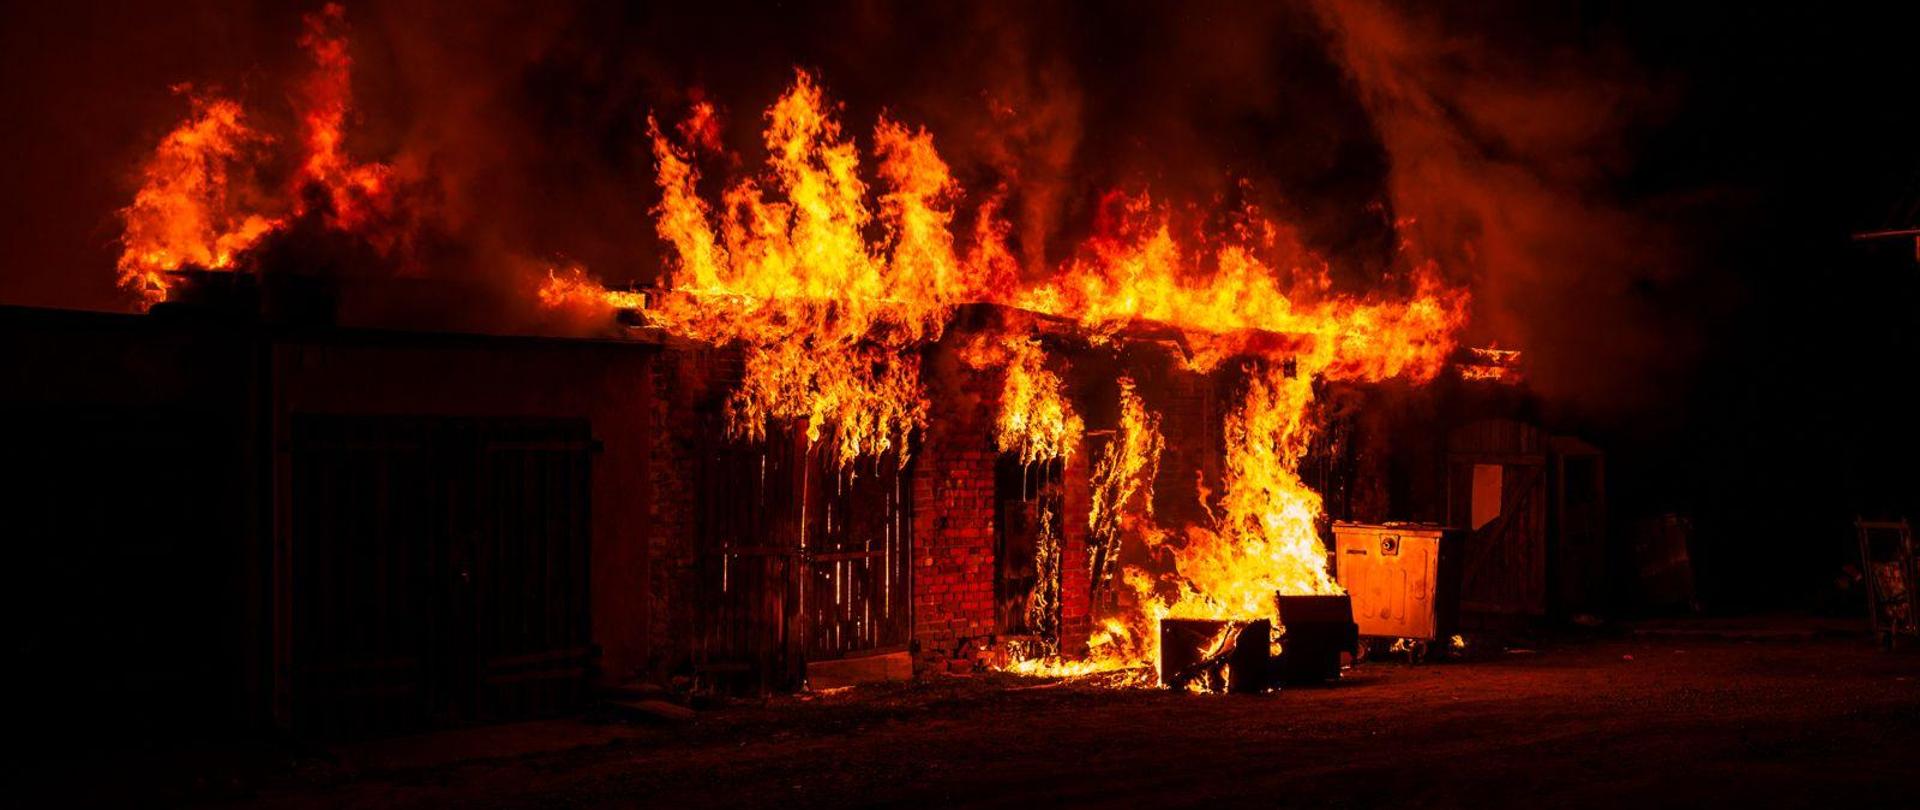 Płomienie wychodzą spod więźby dachowej budynku gospodarczego